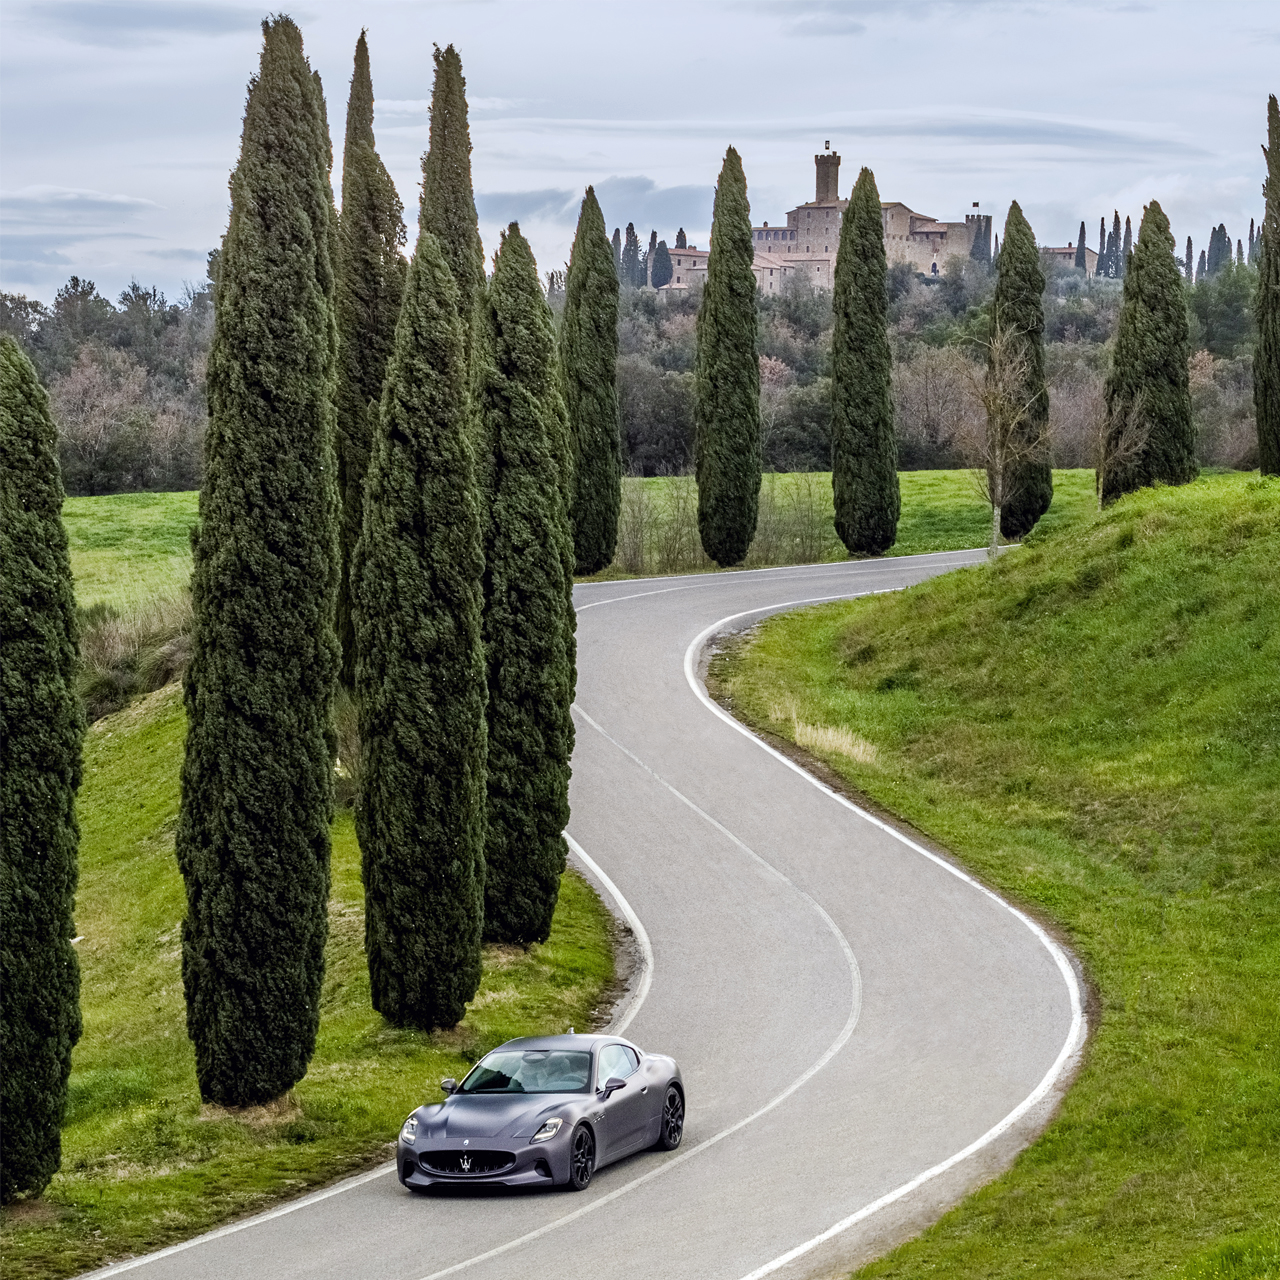 Maserati GranTurismo Folgore on the road